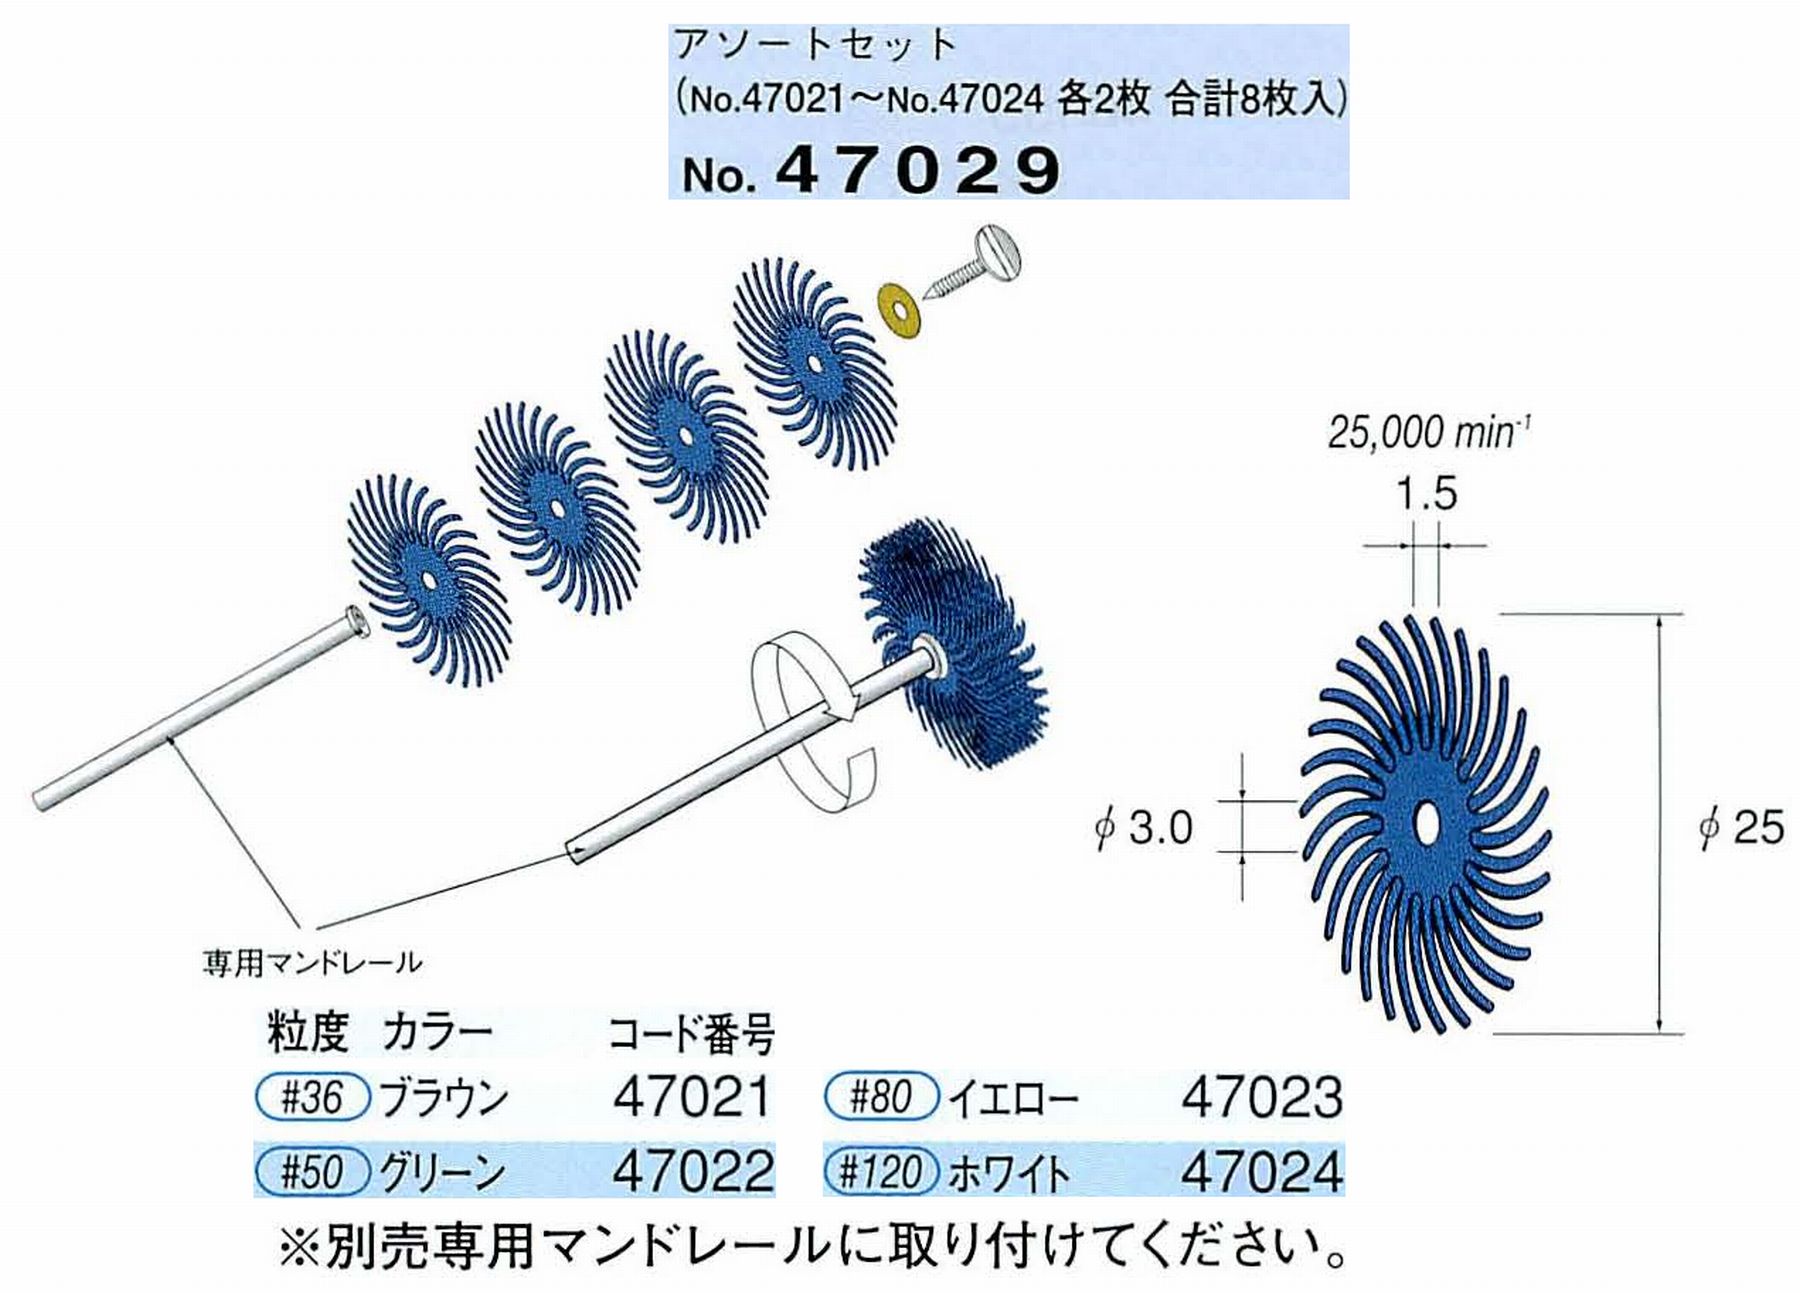 ナカニシ/NAKANISHI フェザーゴム砥石アソートセット 47029